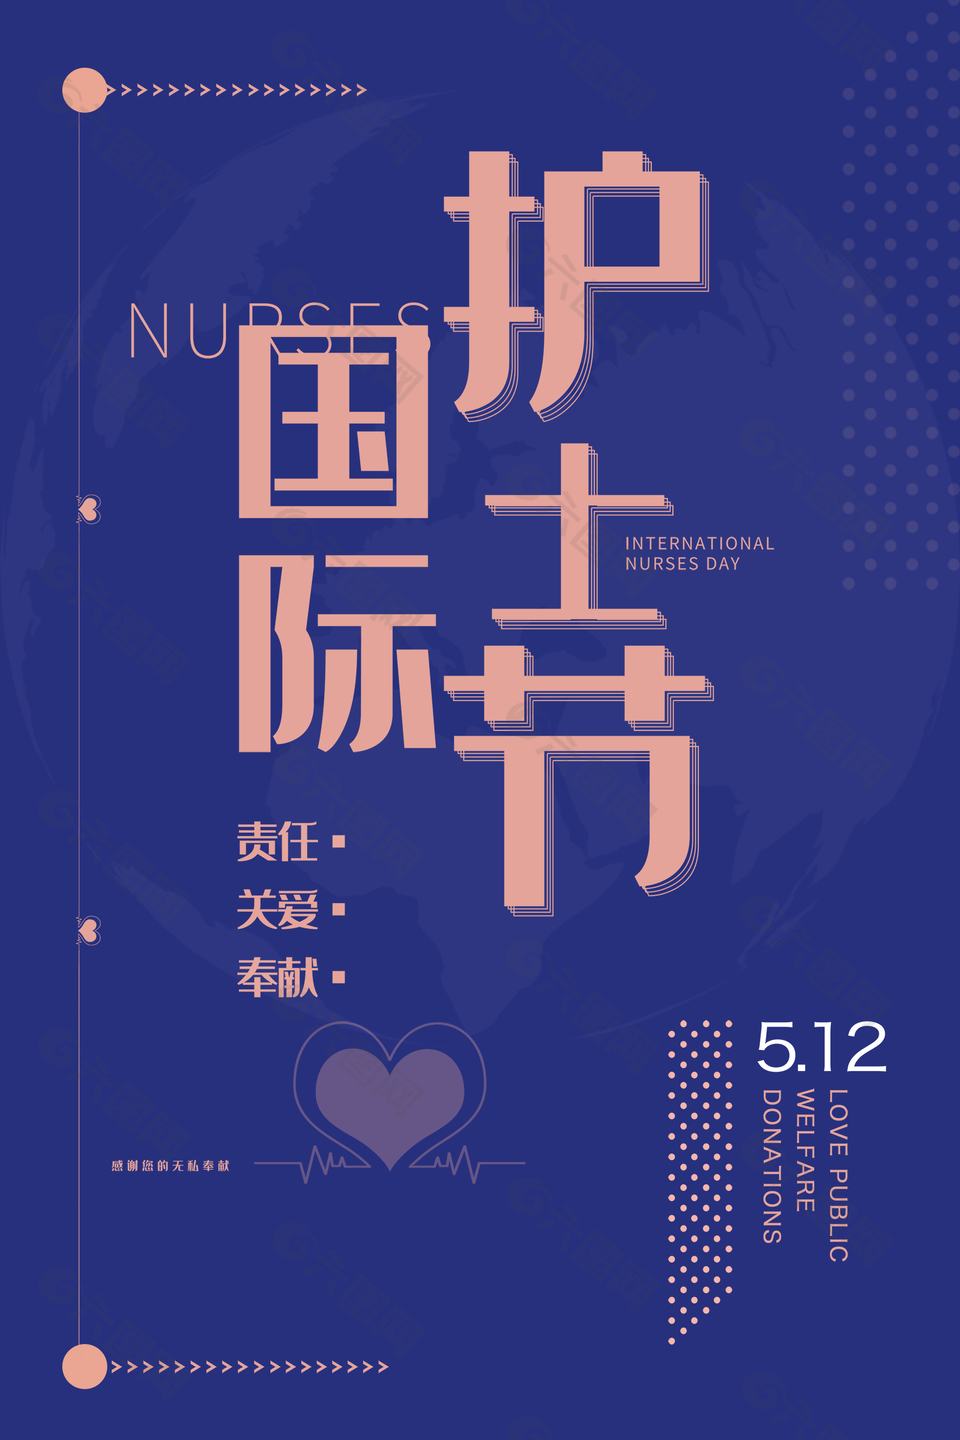 简单5.12日国际护士节海报设计